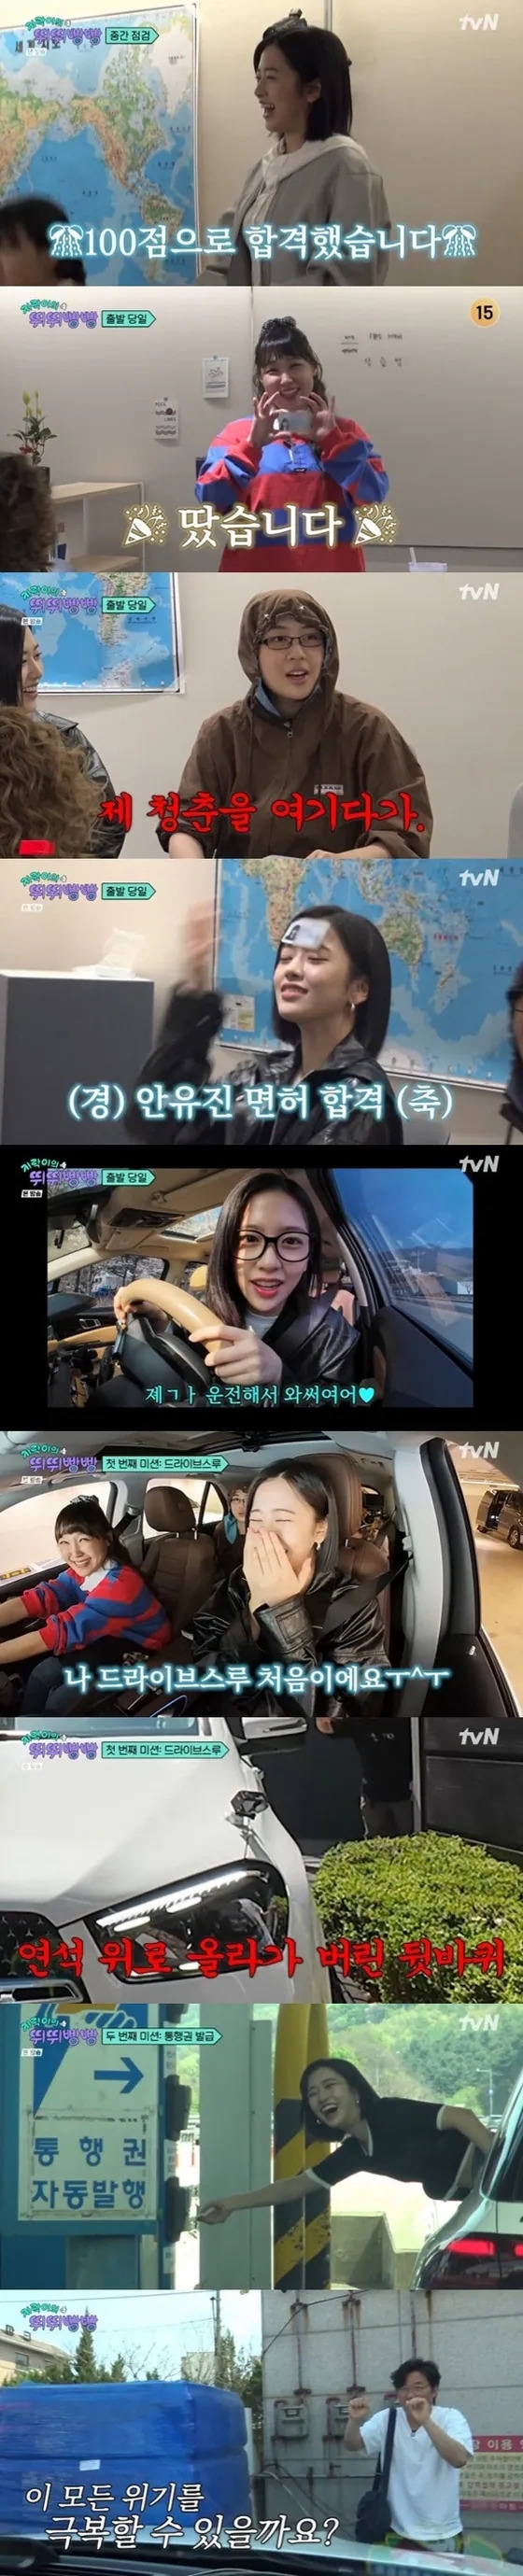 tvN 예능 프로그램 ‘지락이의 뛰뛰빵빵’ 캡처